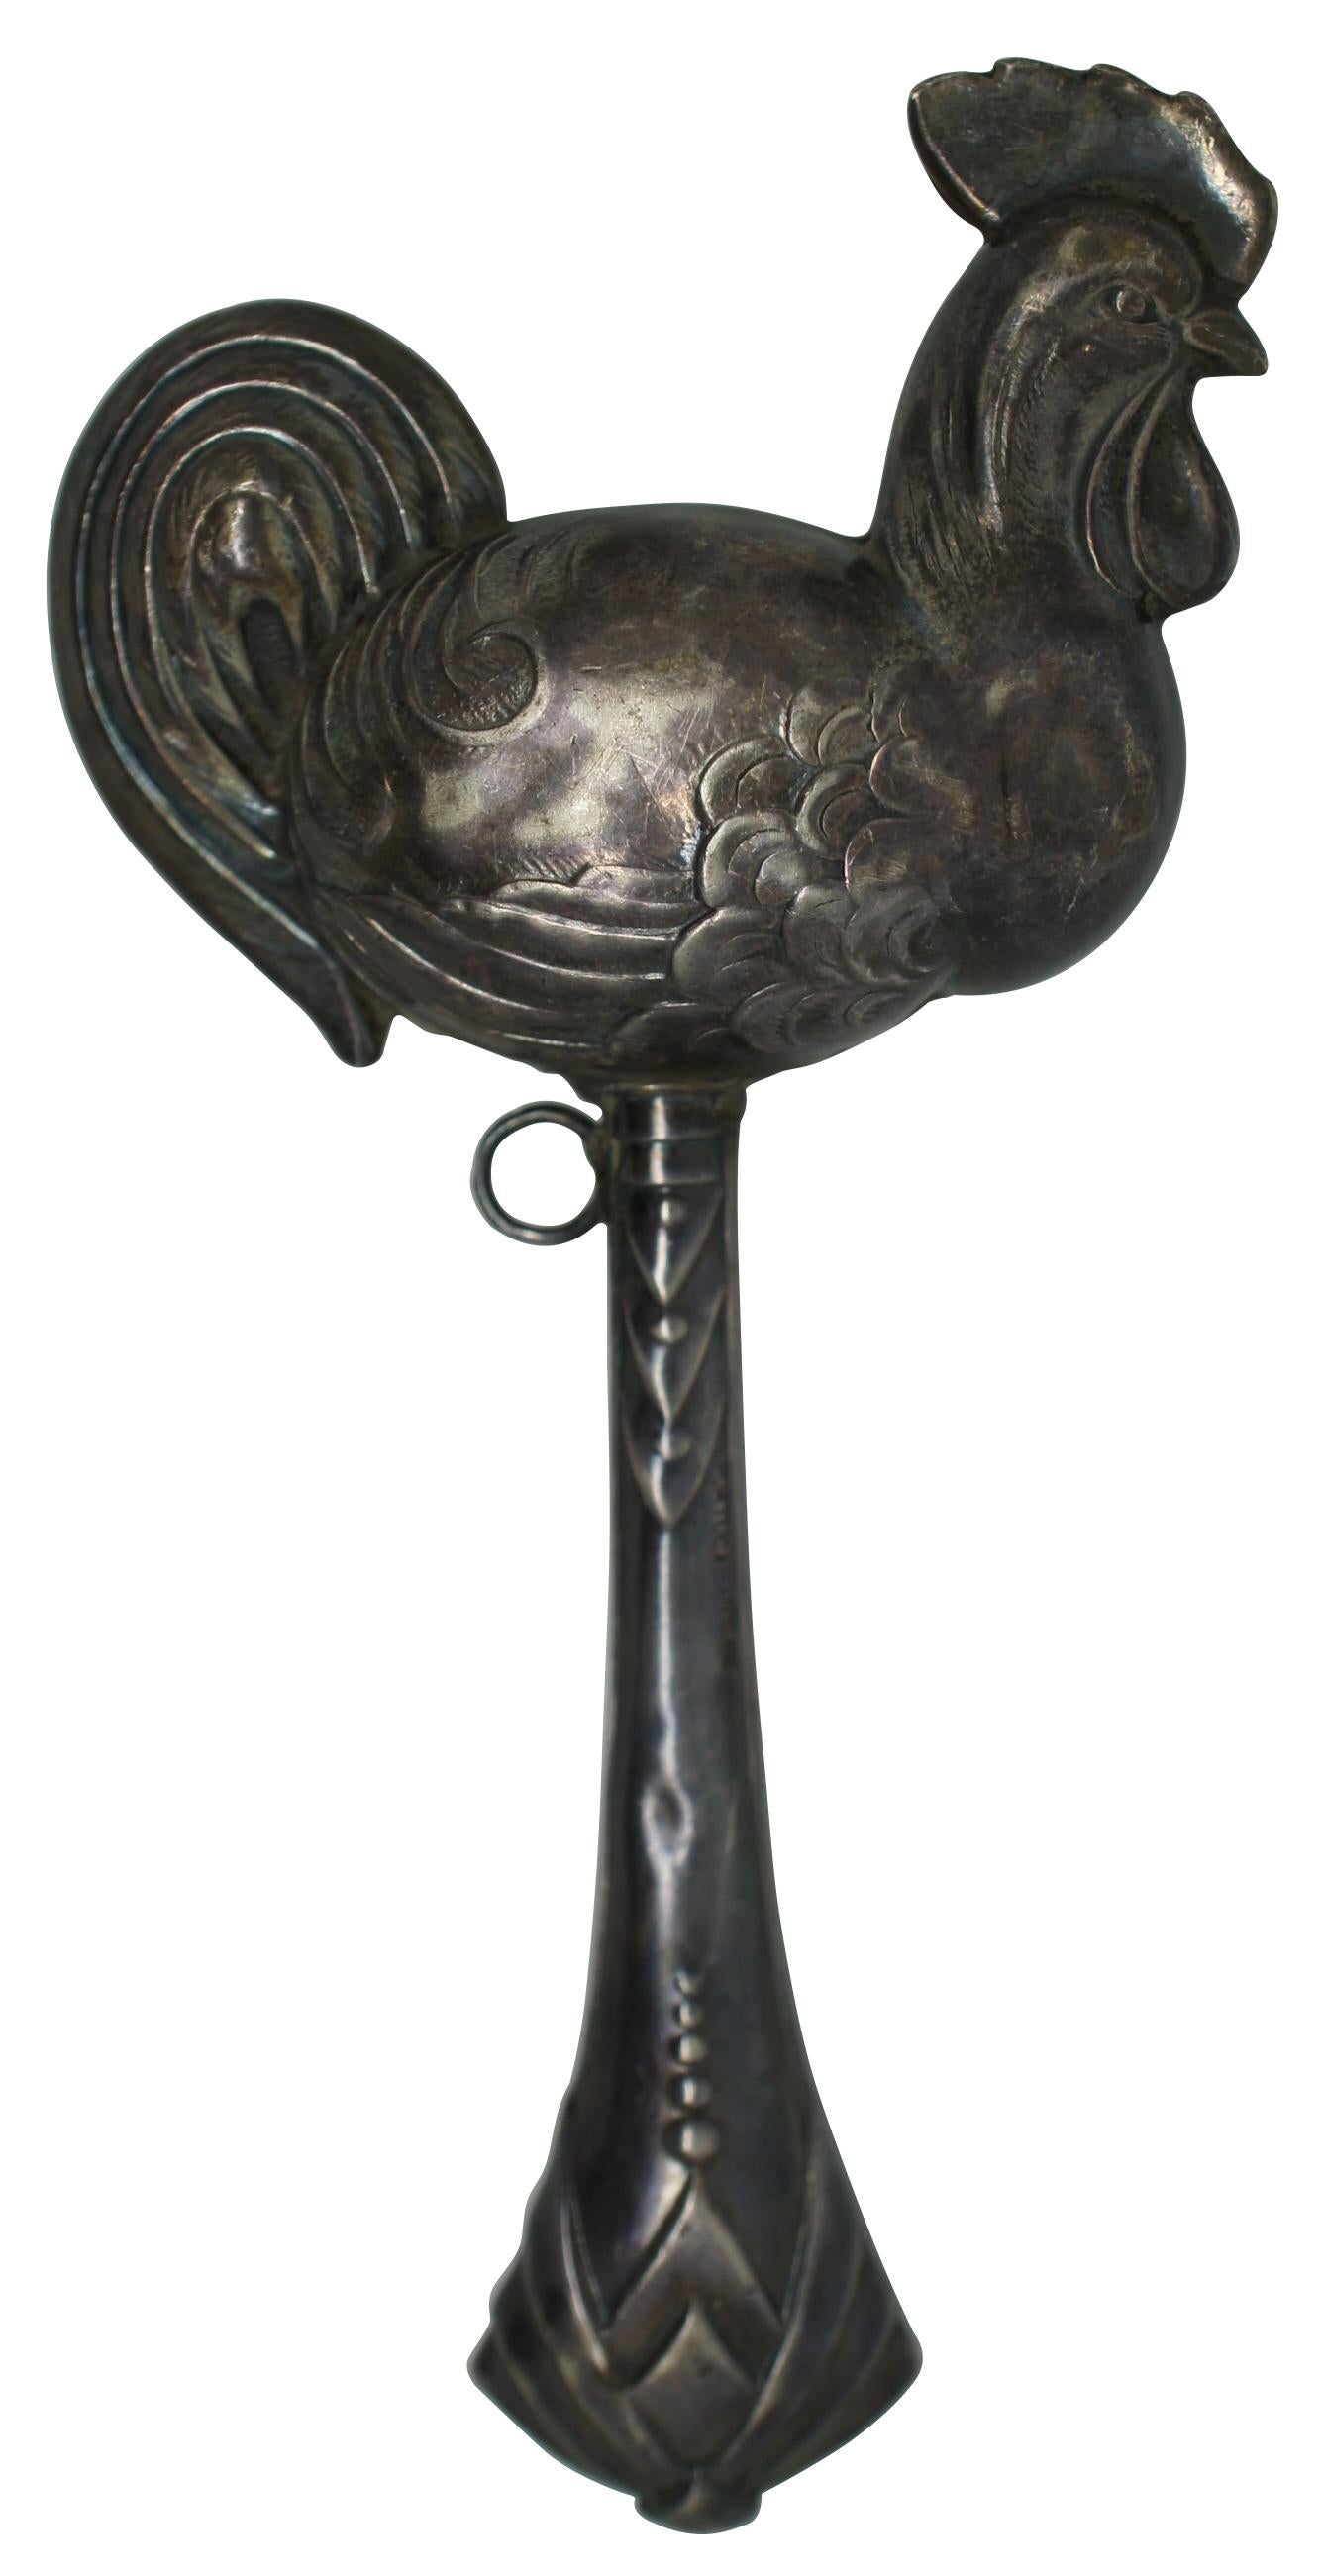 Hochet antique Topazio en argent sterling 925 en forme de poulet / coq / animal de ferme sur un bâton ; fabriqué au Portugal.

Mesures : 2